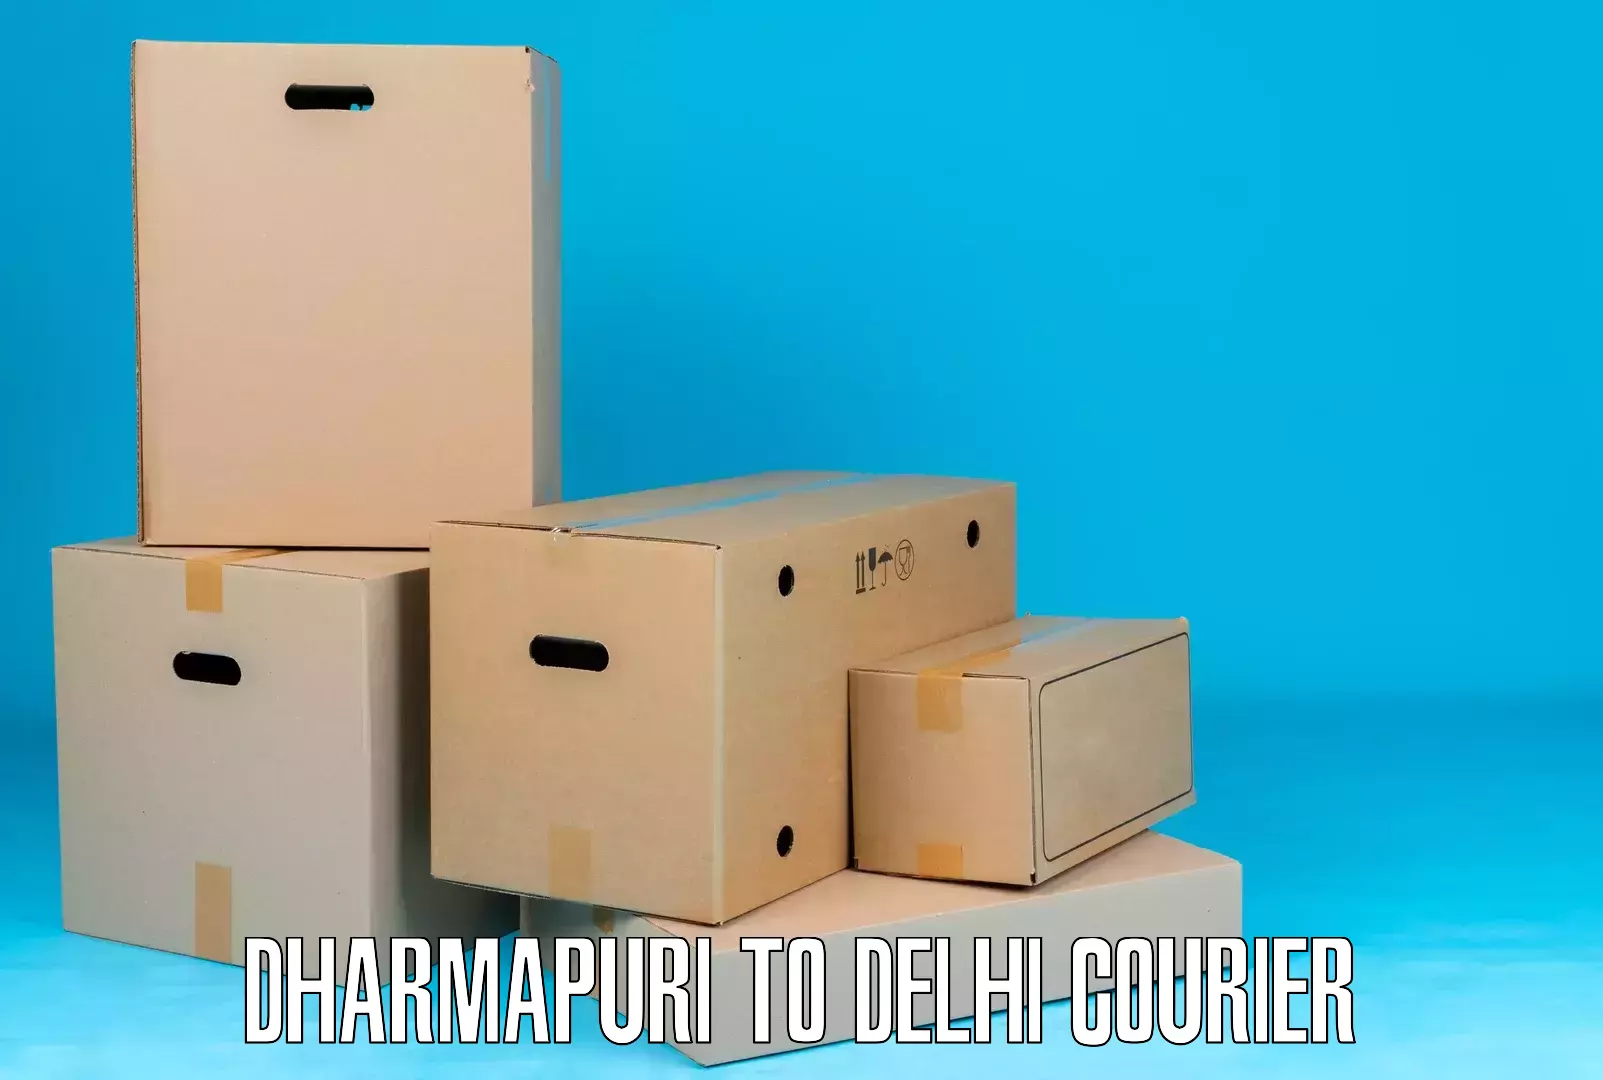 Courier service comparison in Dharmapuri to IIT Delhi